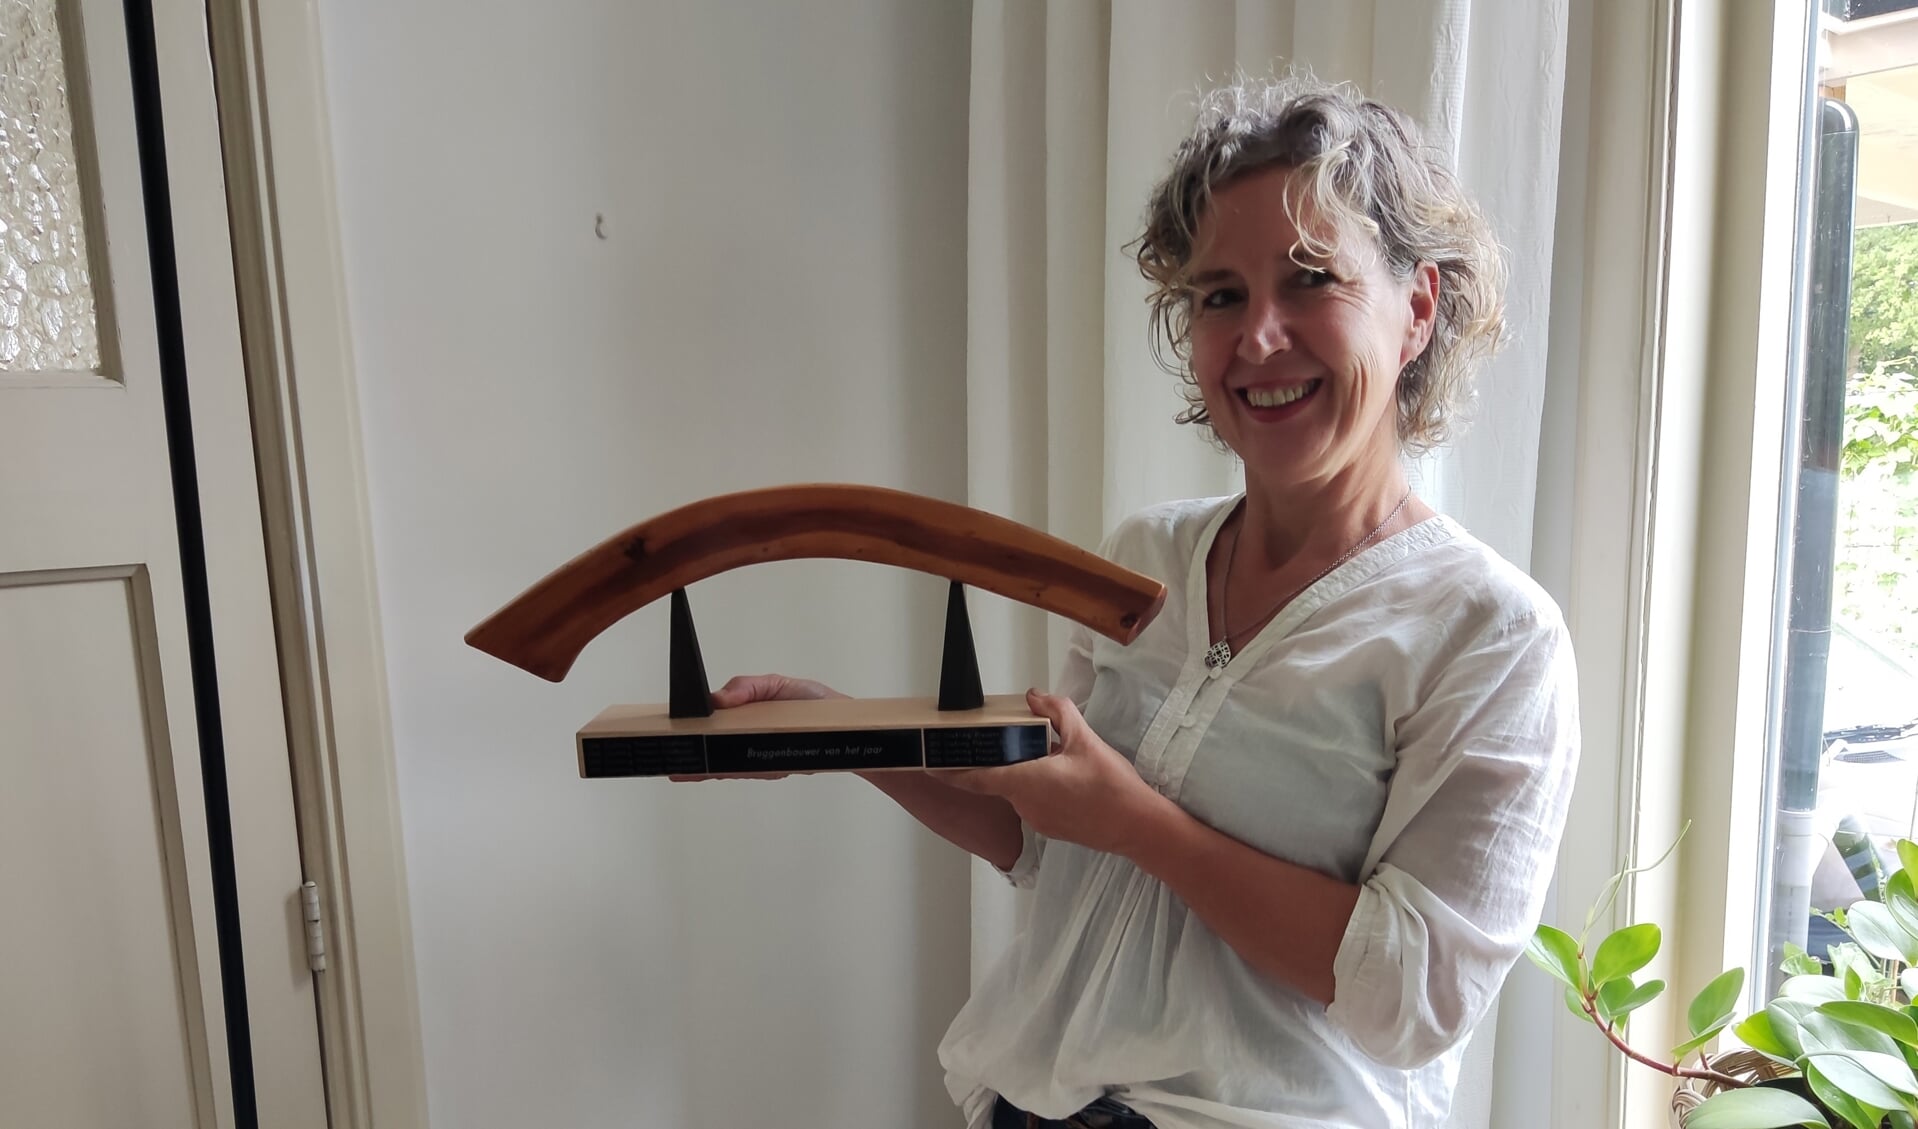 Vol trots laat Anneke van Nierop de gewonnen award zien. Foto: Present Winterwijk